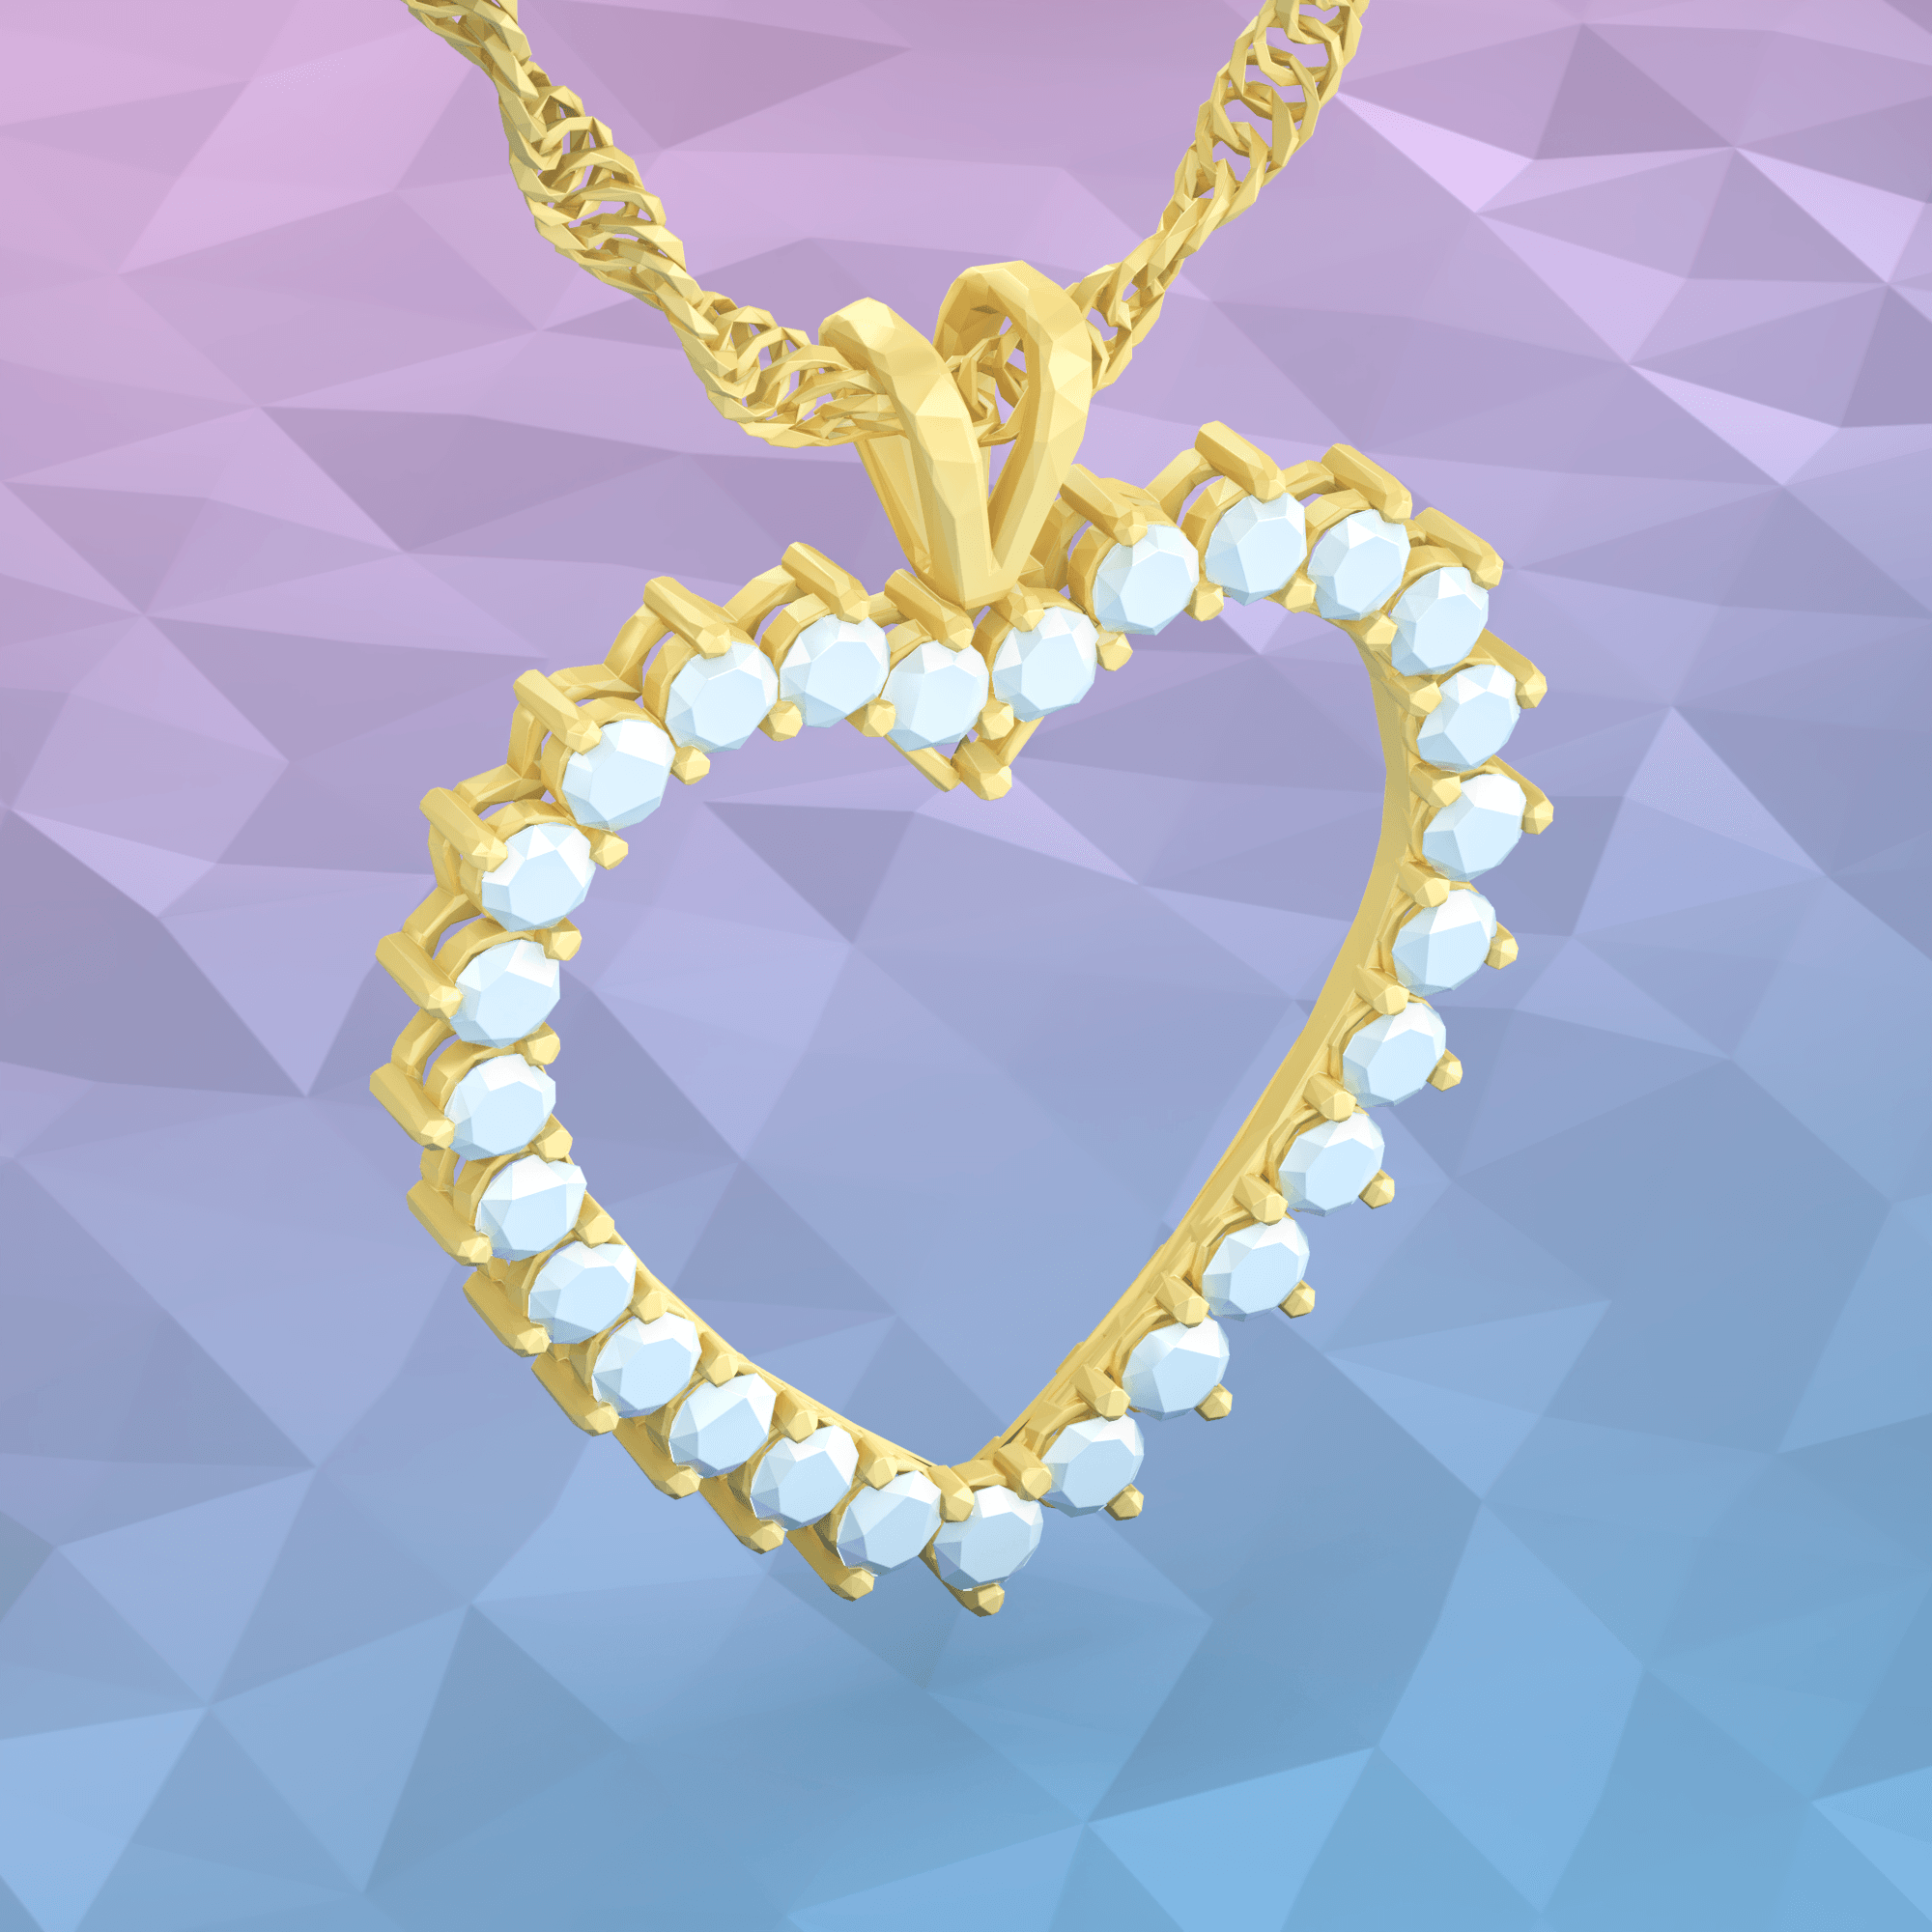 Jewelry Necklace #05